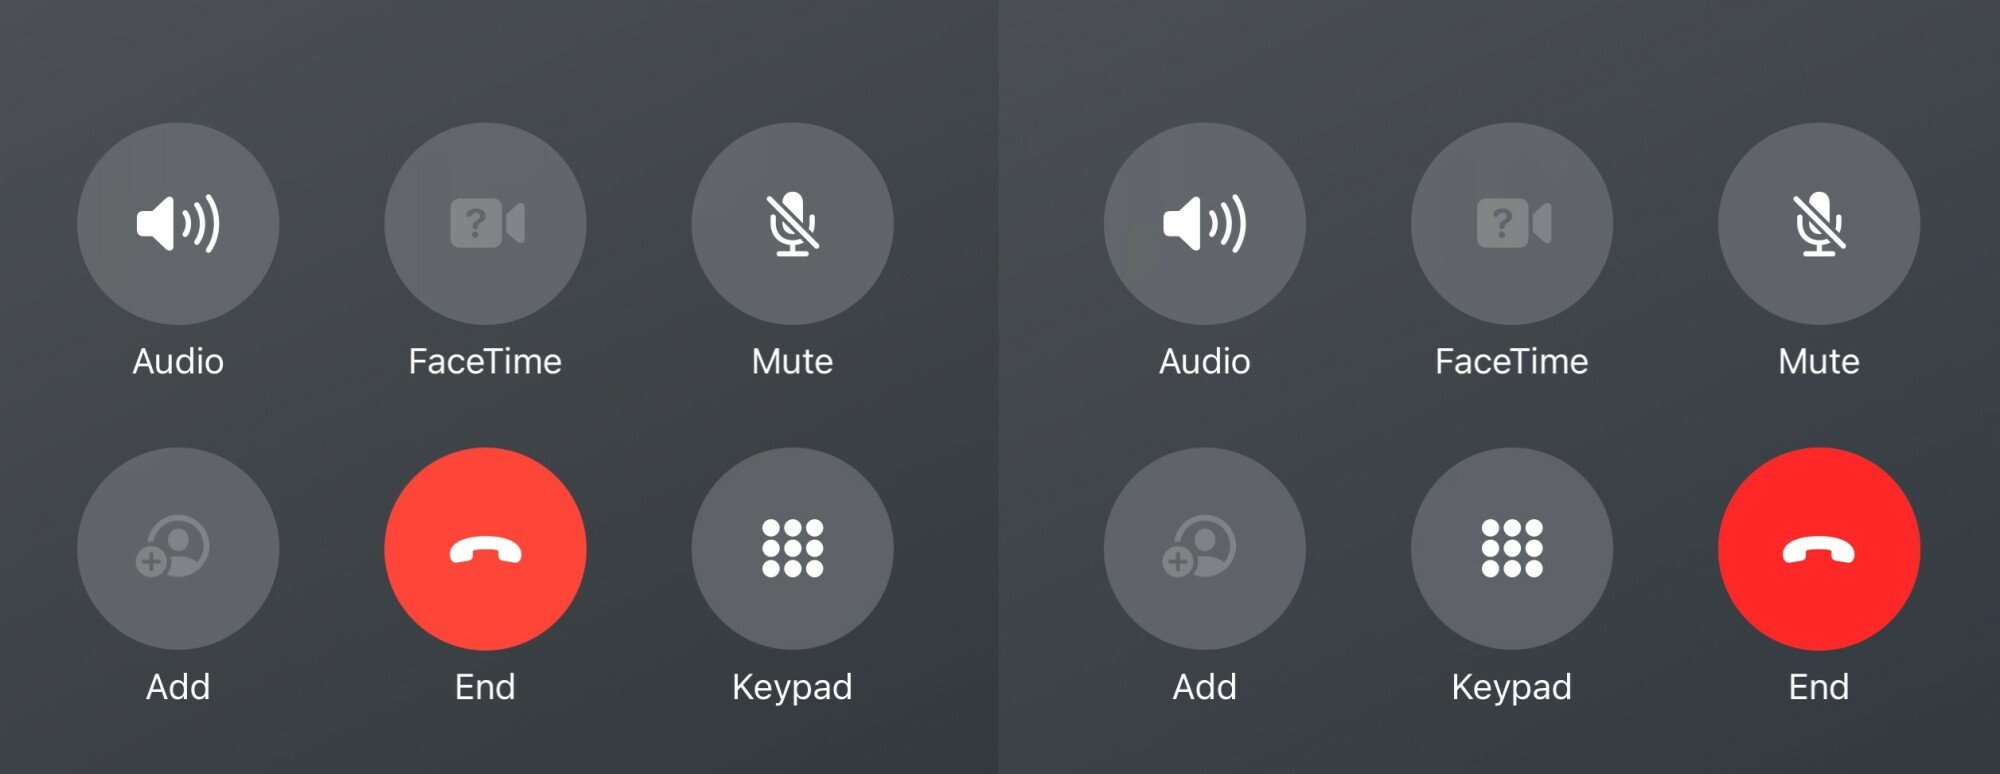 iOS 17 beta end call button